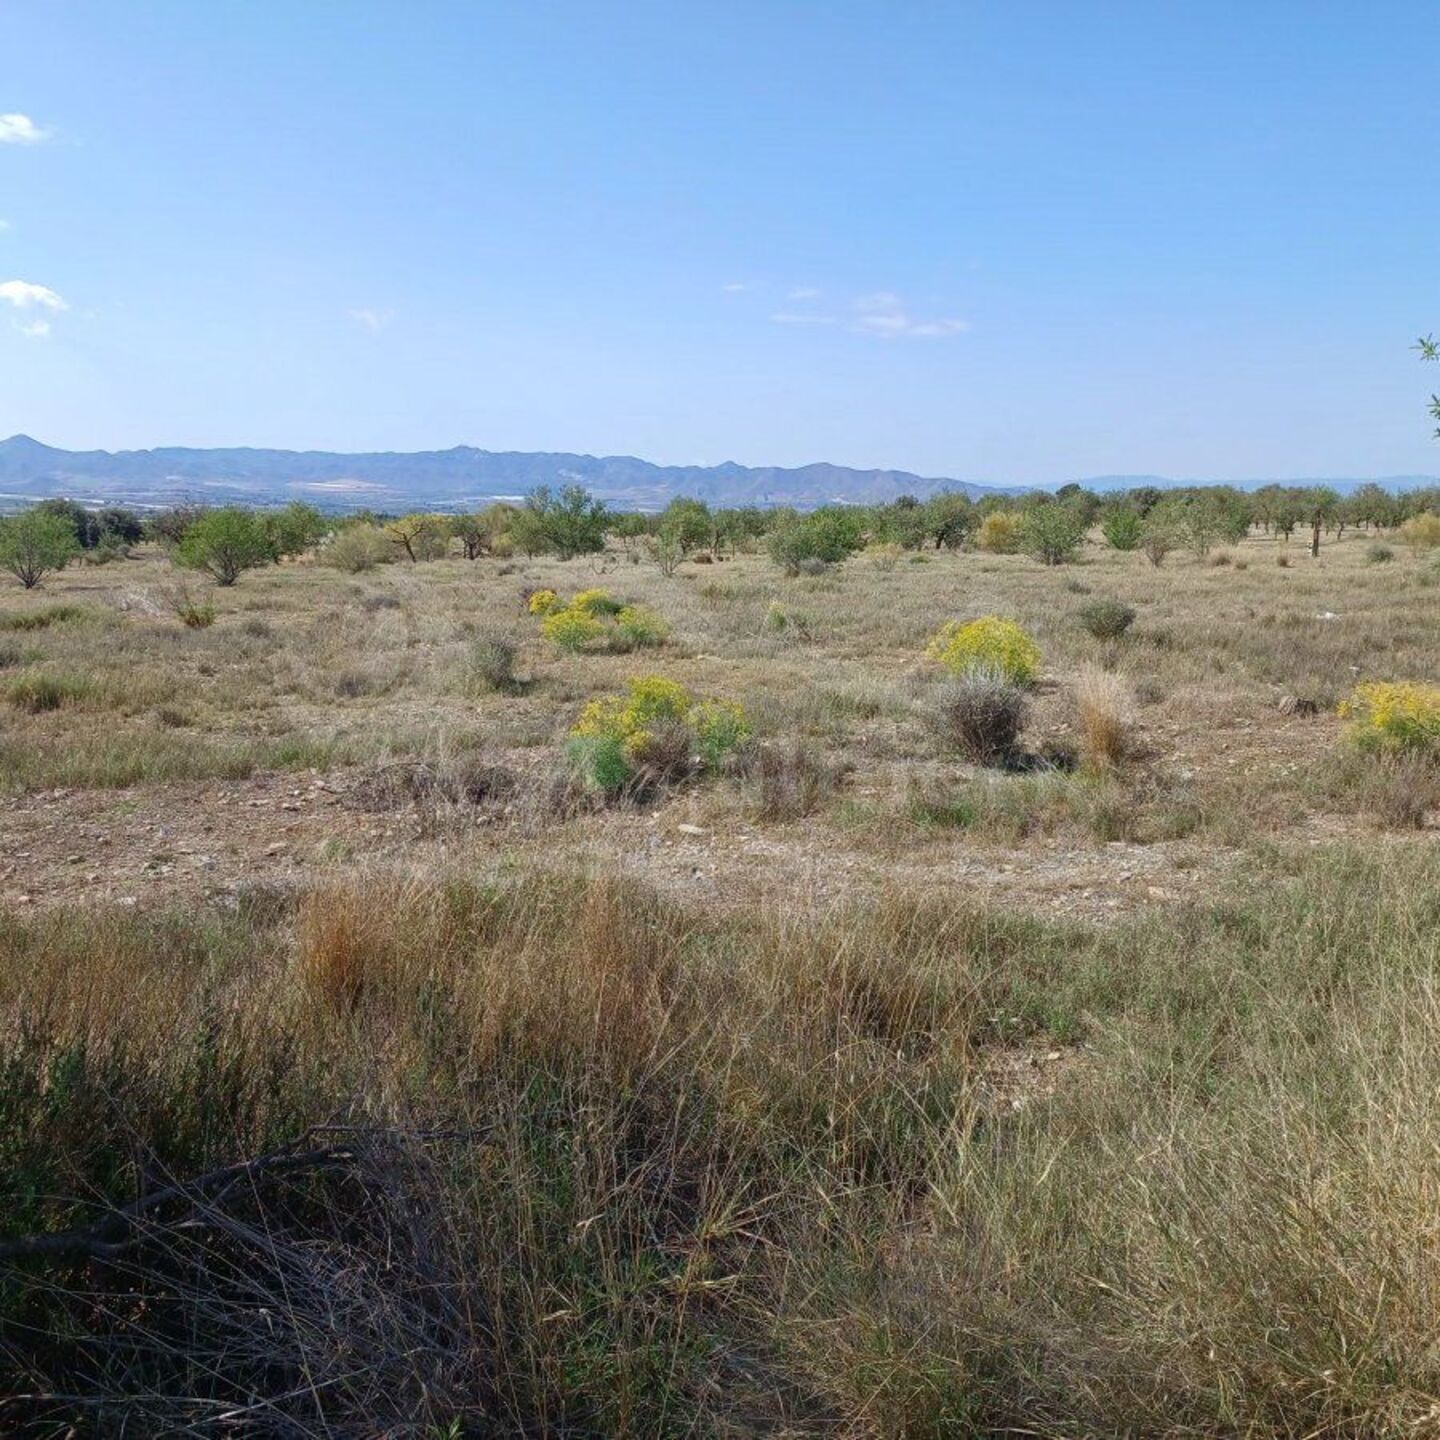 R22231: Rural land for Sale in Huercal-Overa, Almería